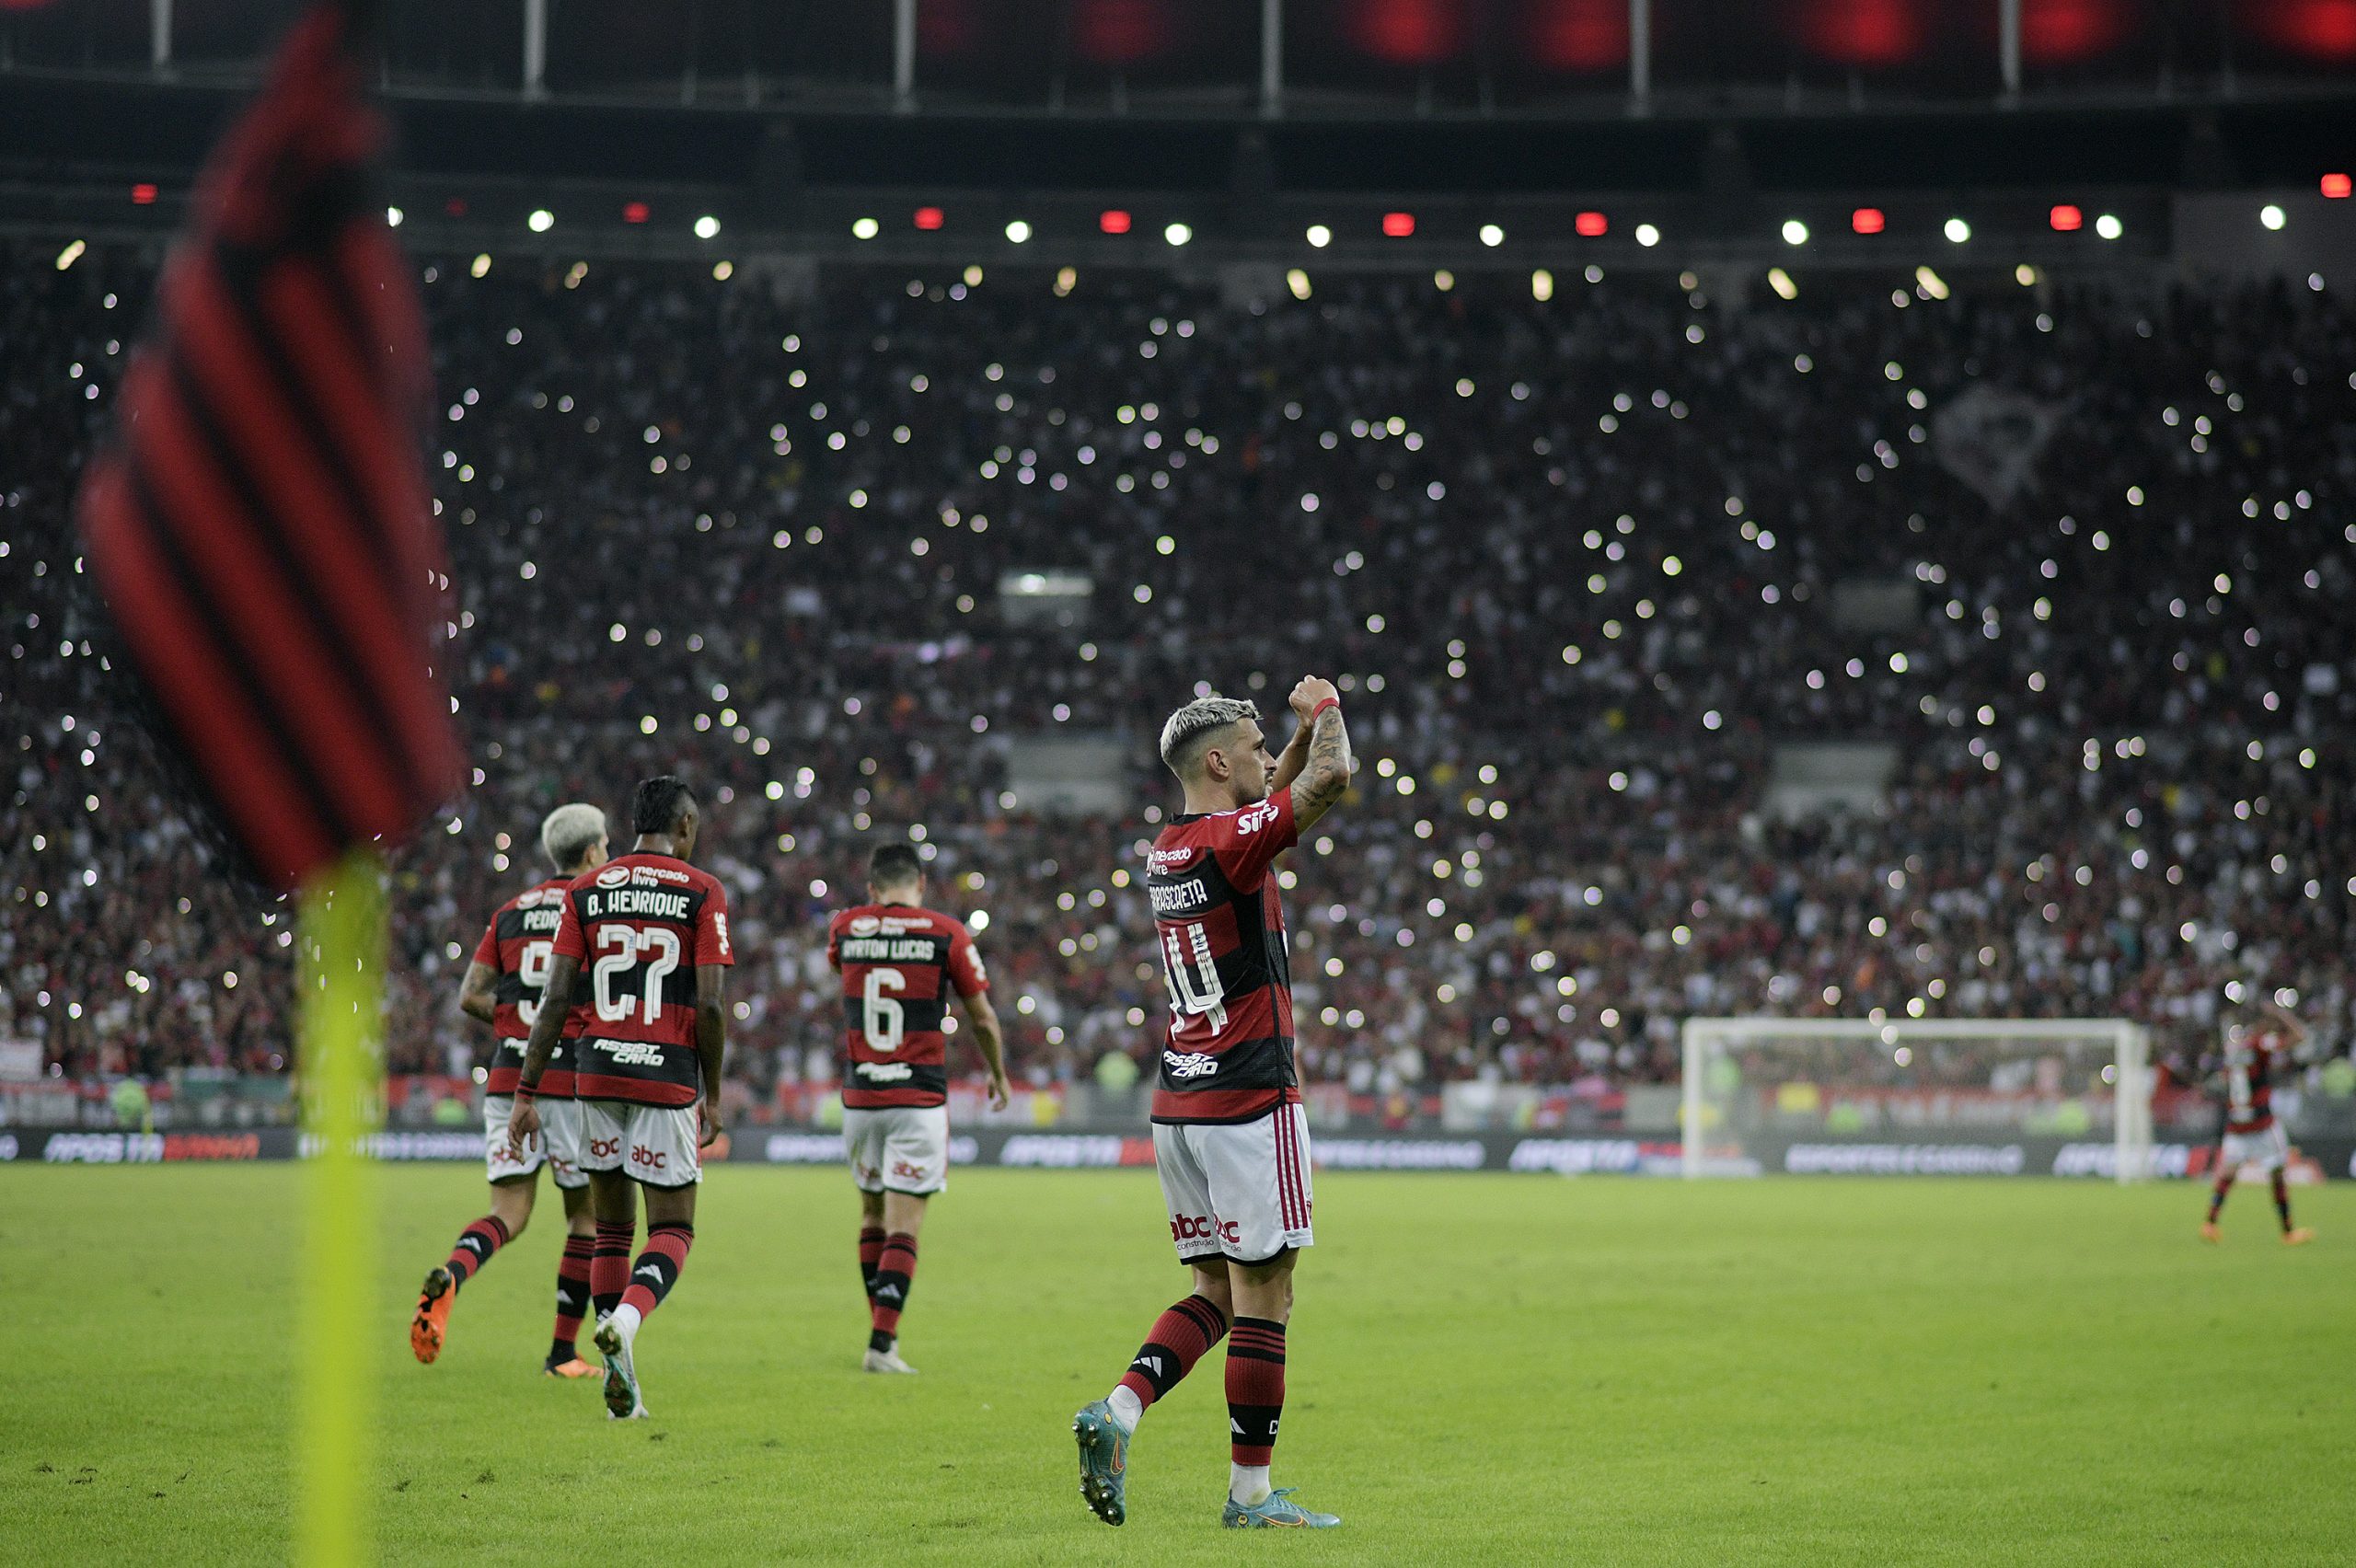 Arrascaeta comemora gol marcado na vitória do Flamengo sobre o Fortaleza (Foto: Alexandre Loureiro/Getty Images)